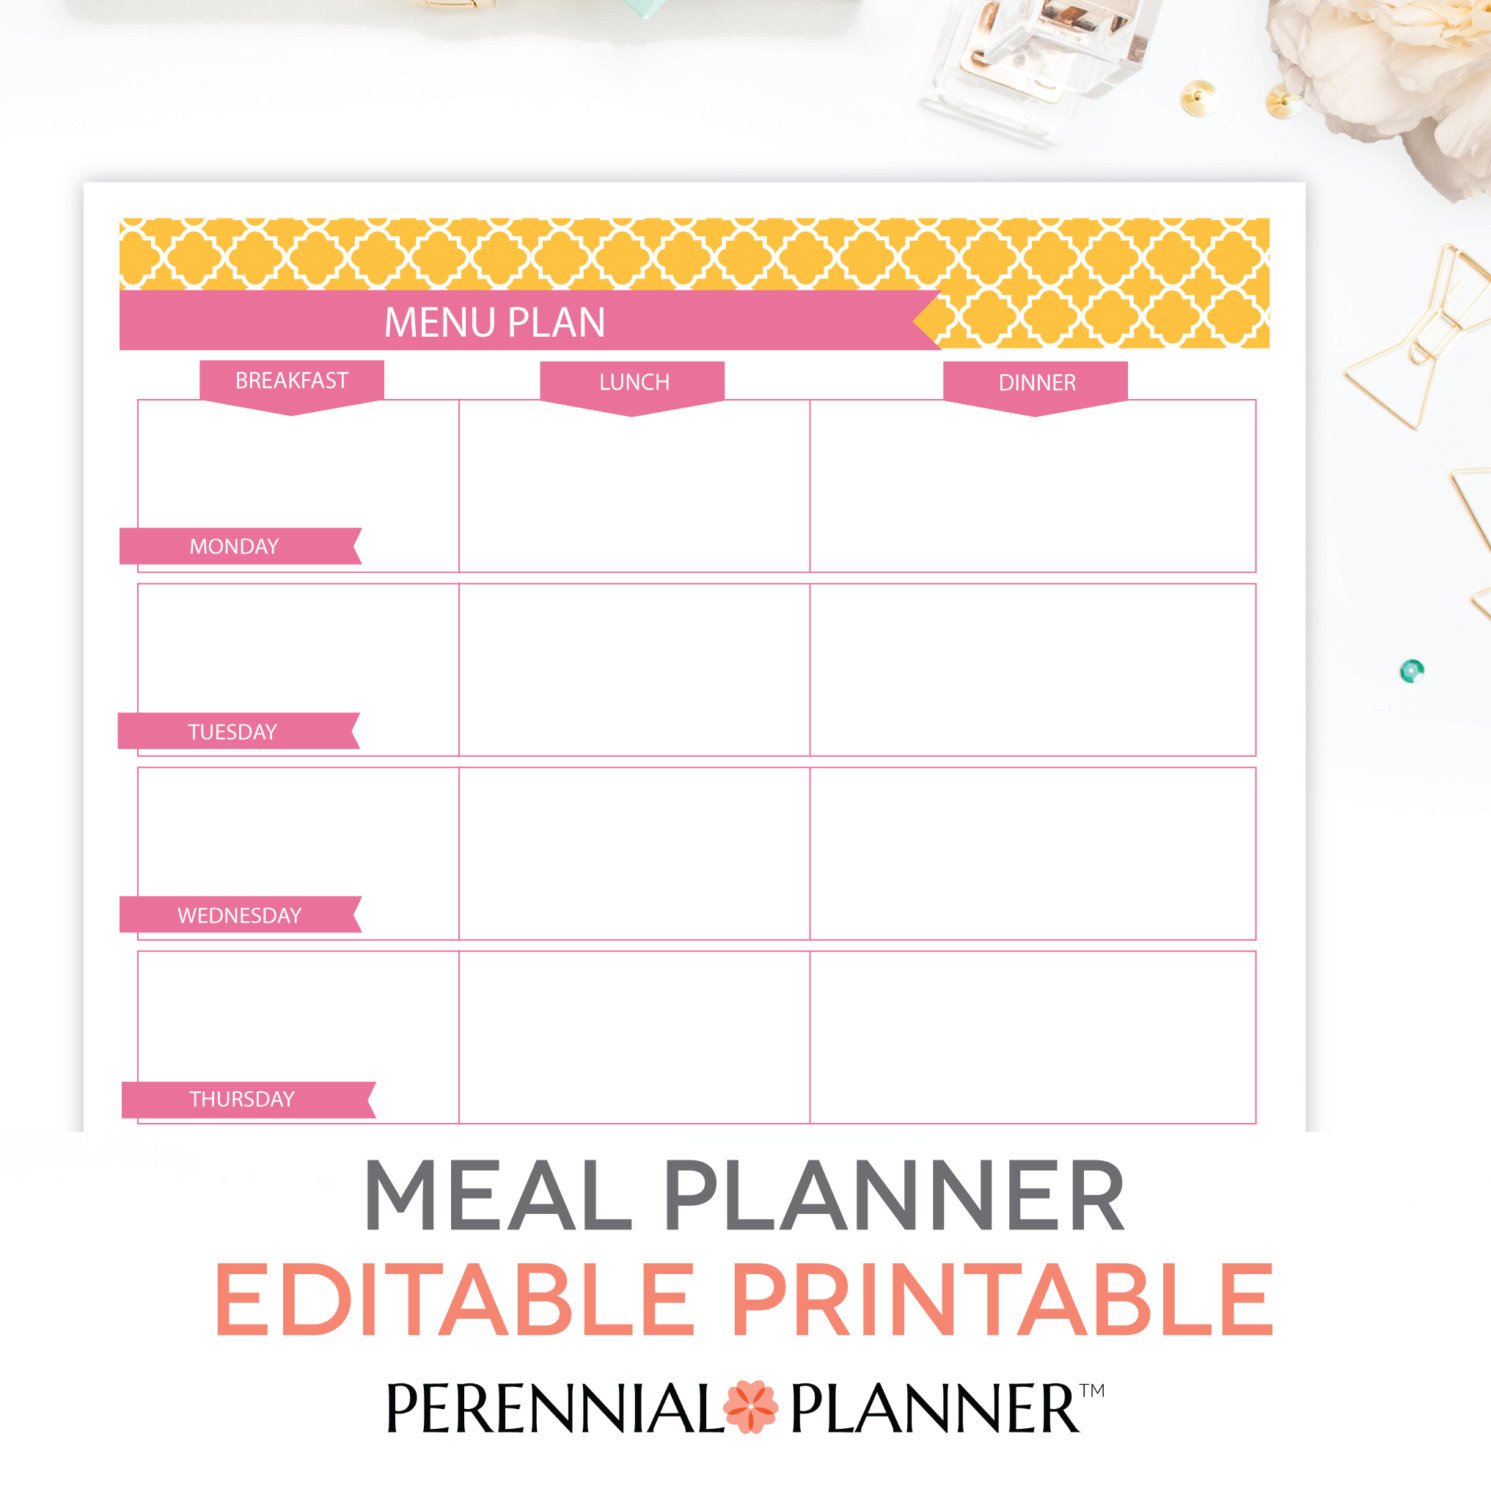 Free Printable Menu Template Menu Plan Weekly Meal Planning Template Printable Editable